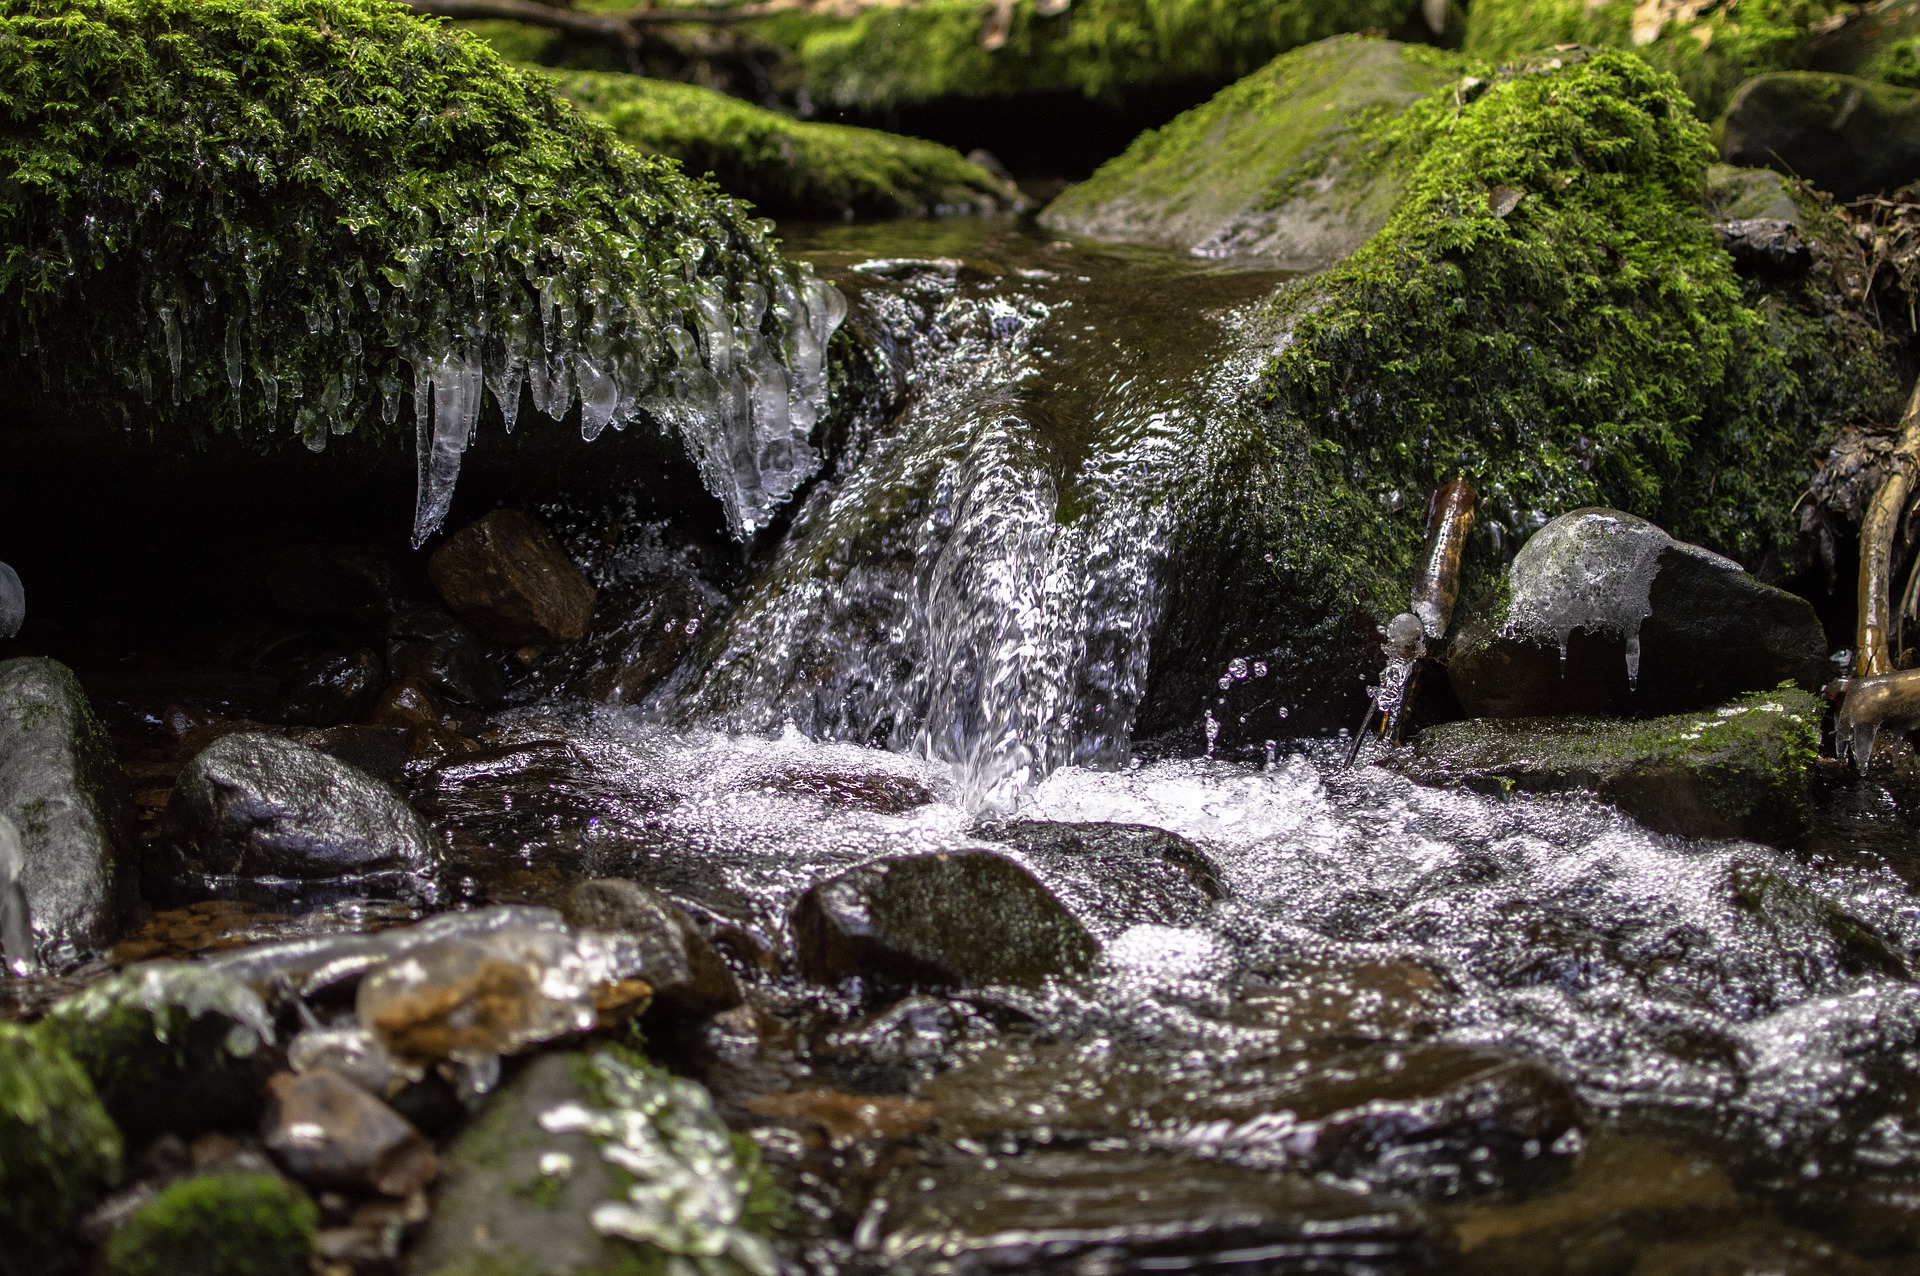 Nachaufnahme eines Baches im Wald mit moosüberwachsenen Steinen und vereinzelt, kleinen Eiszapfen, die ins Wasser hängen.